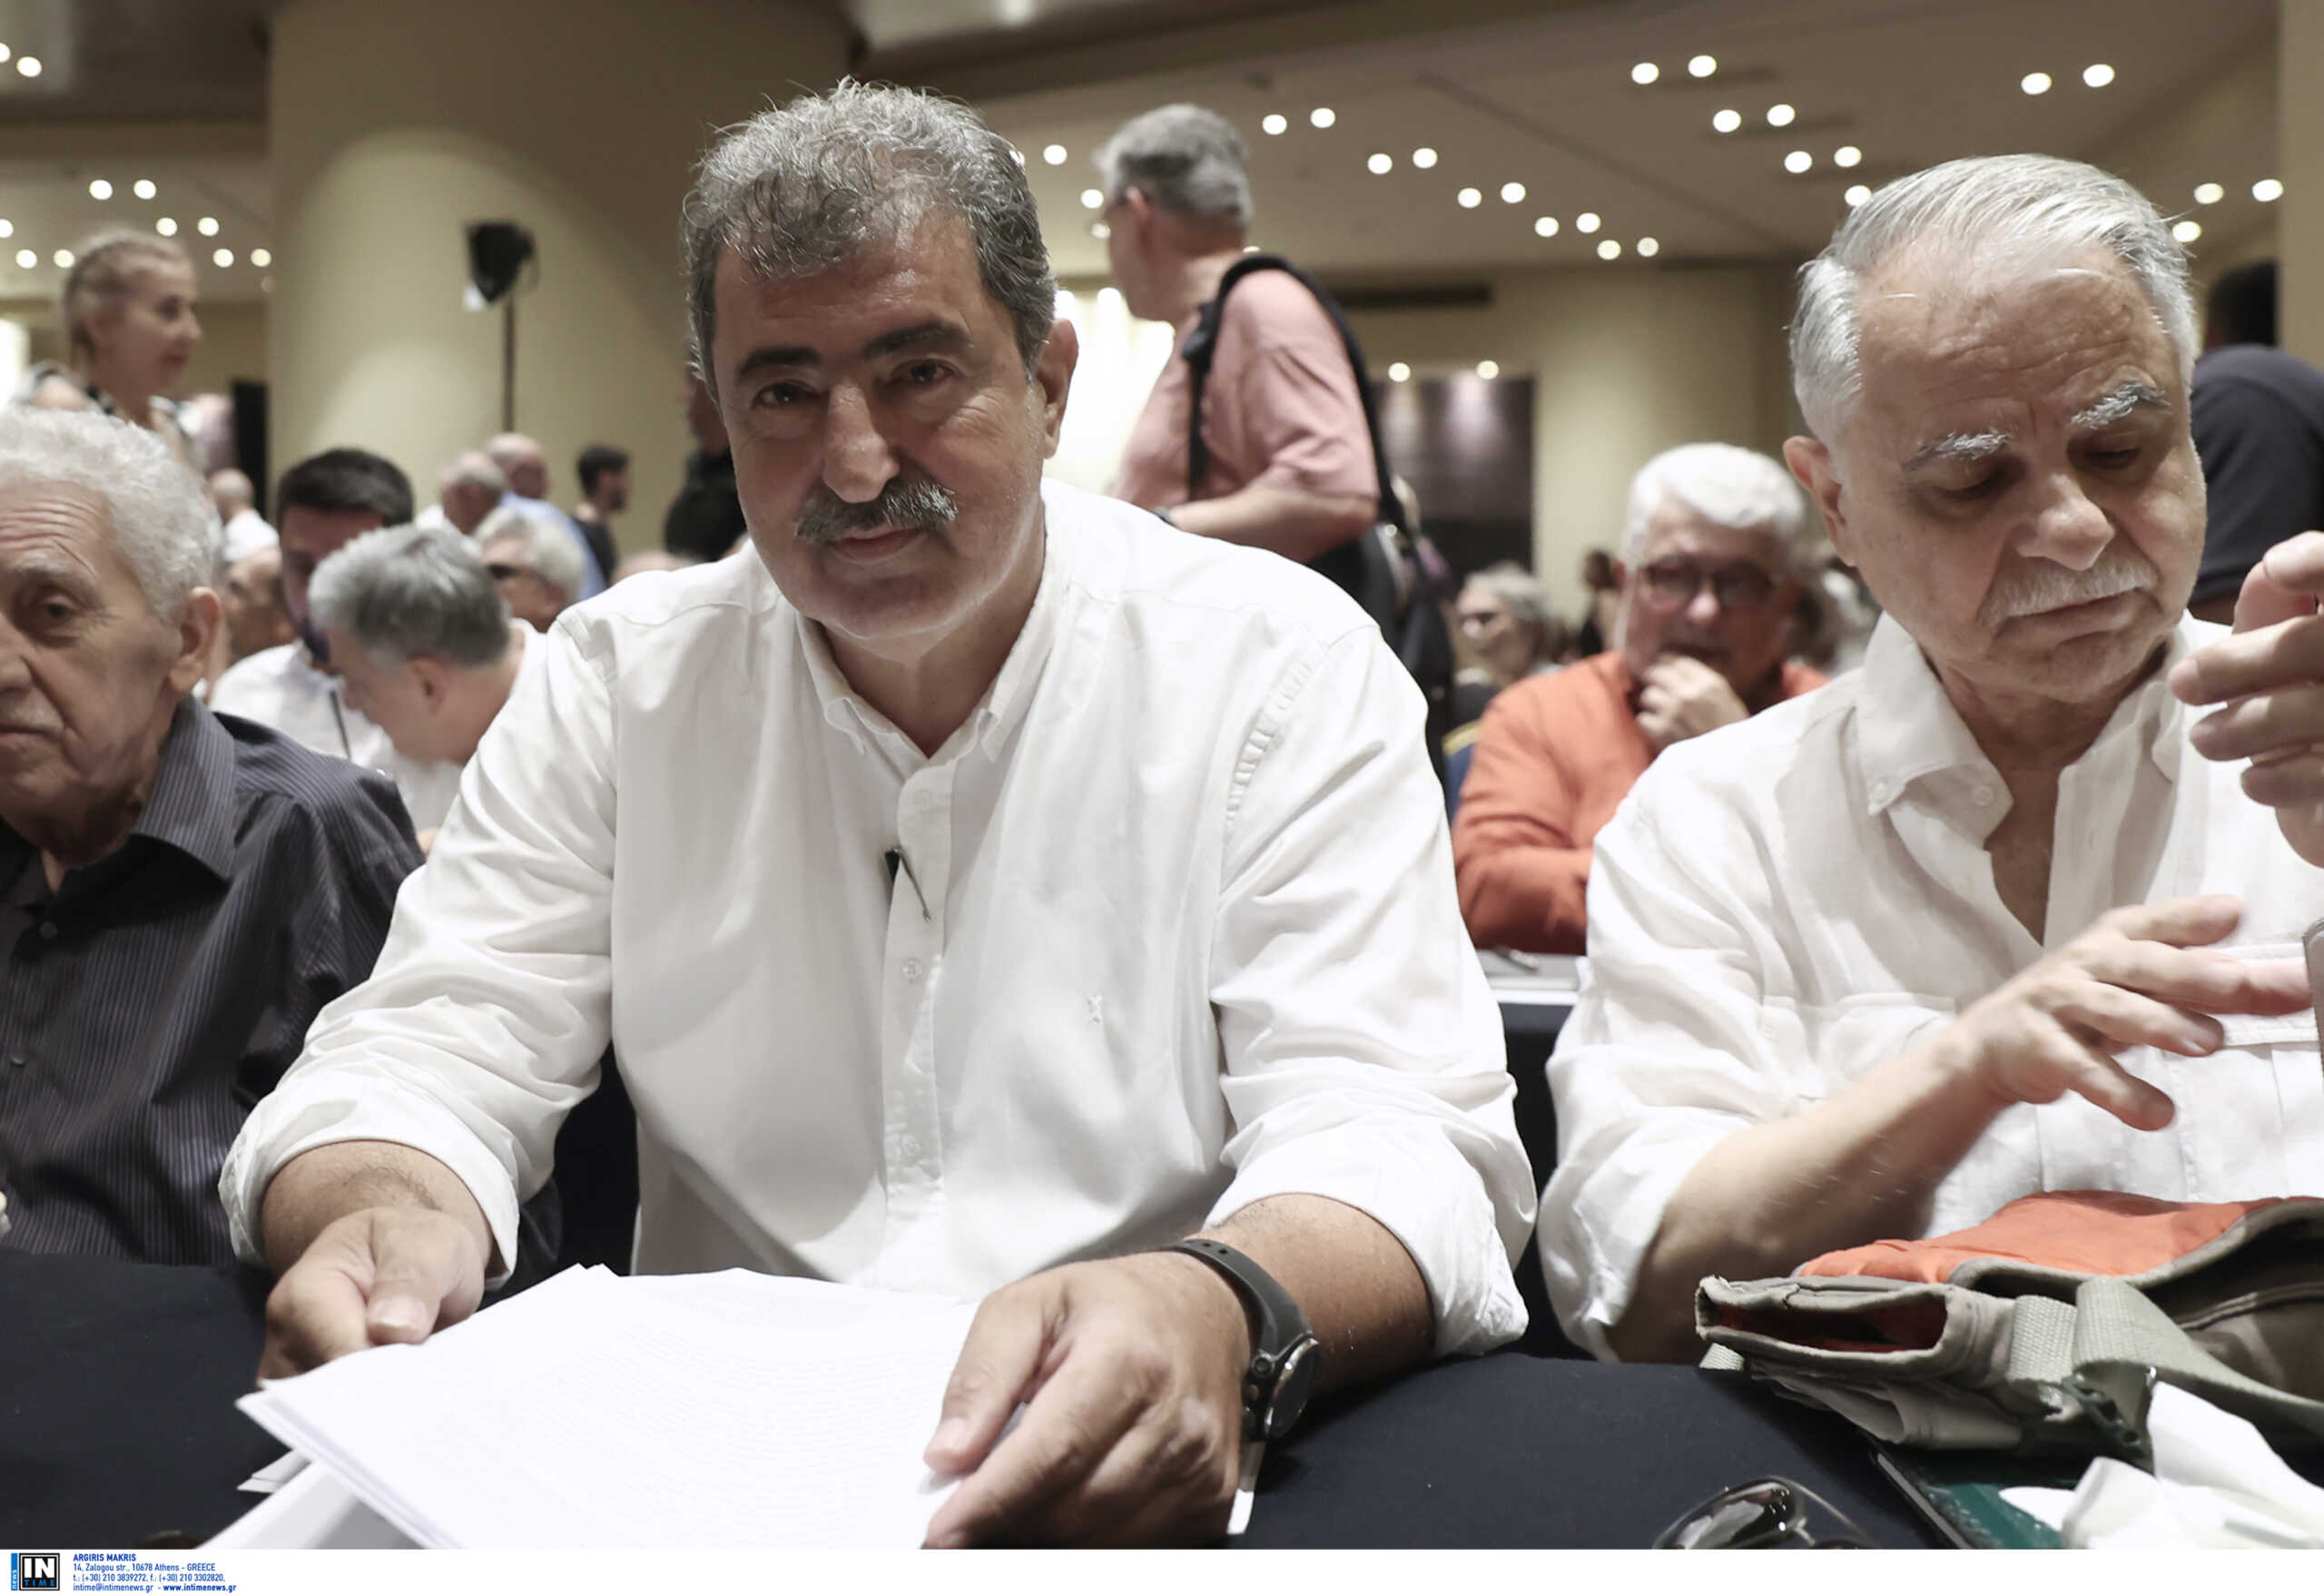 Εκλογές ΣΥΡΙΖΑ: «Προφανώς και δεν ζητάει συγγνώμη εξ ονόματος μου ο Ευκλείδης», λέει ο Πολάκης